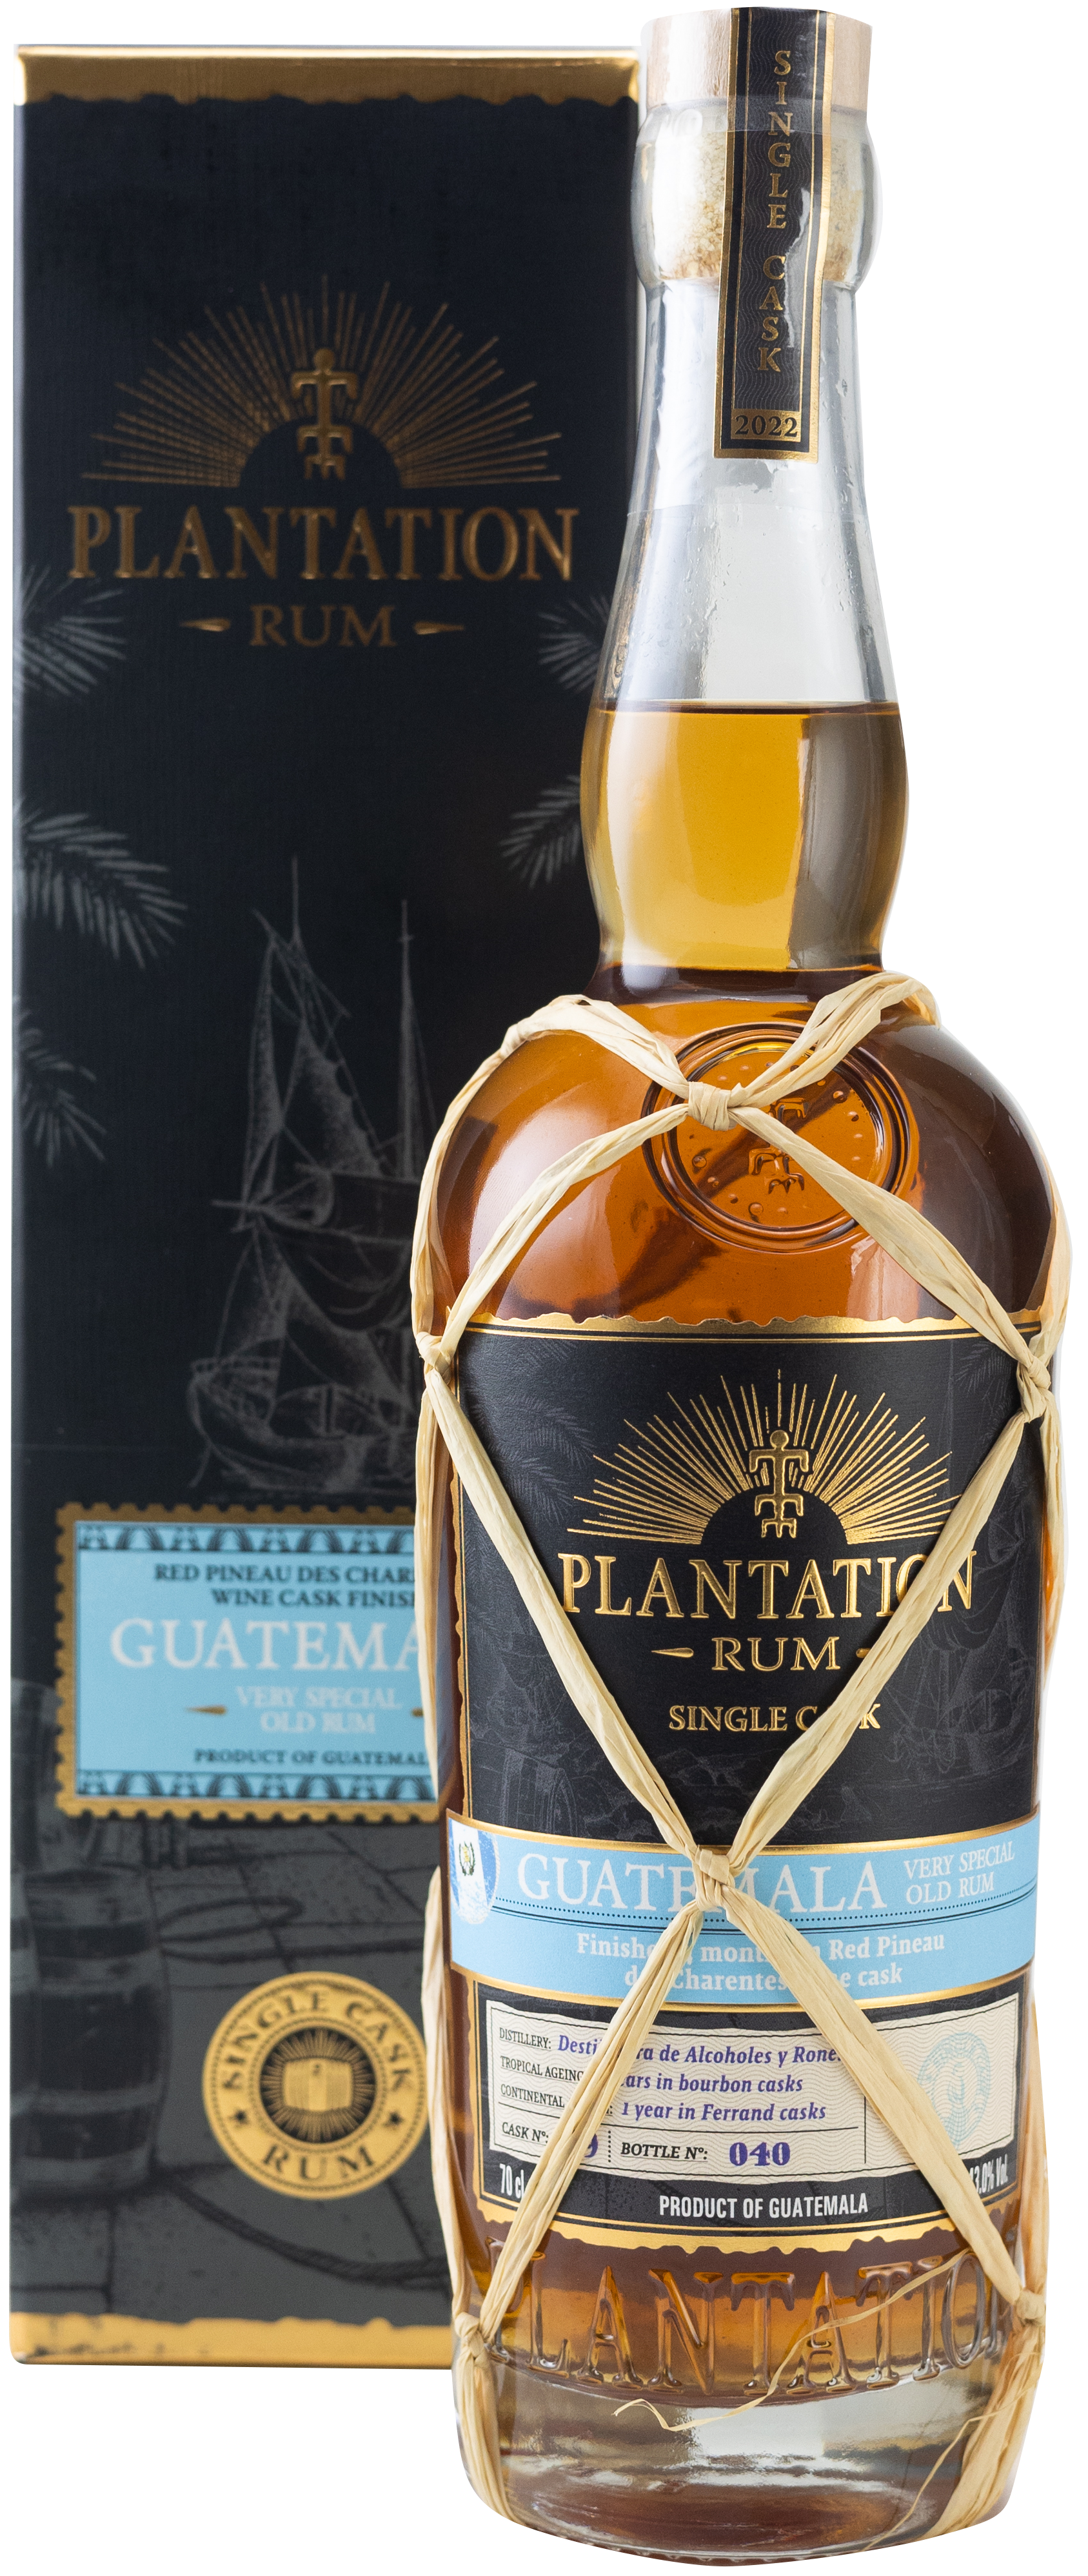 Plantation Rum Single Cask Guatemala 4 Jahre Red Pineau des Charentes Wine Cask Finish 43% 0,7l